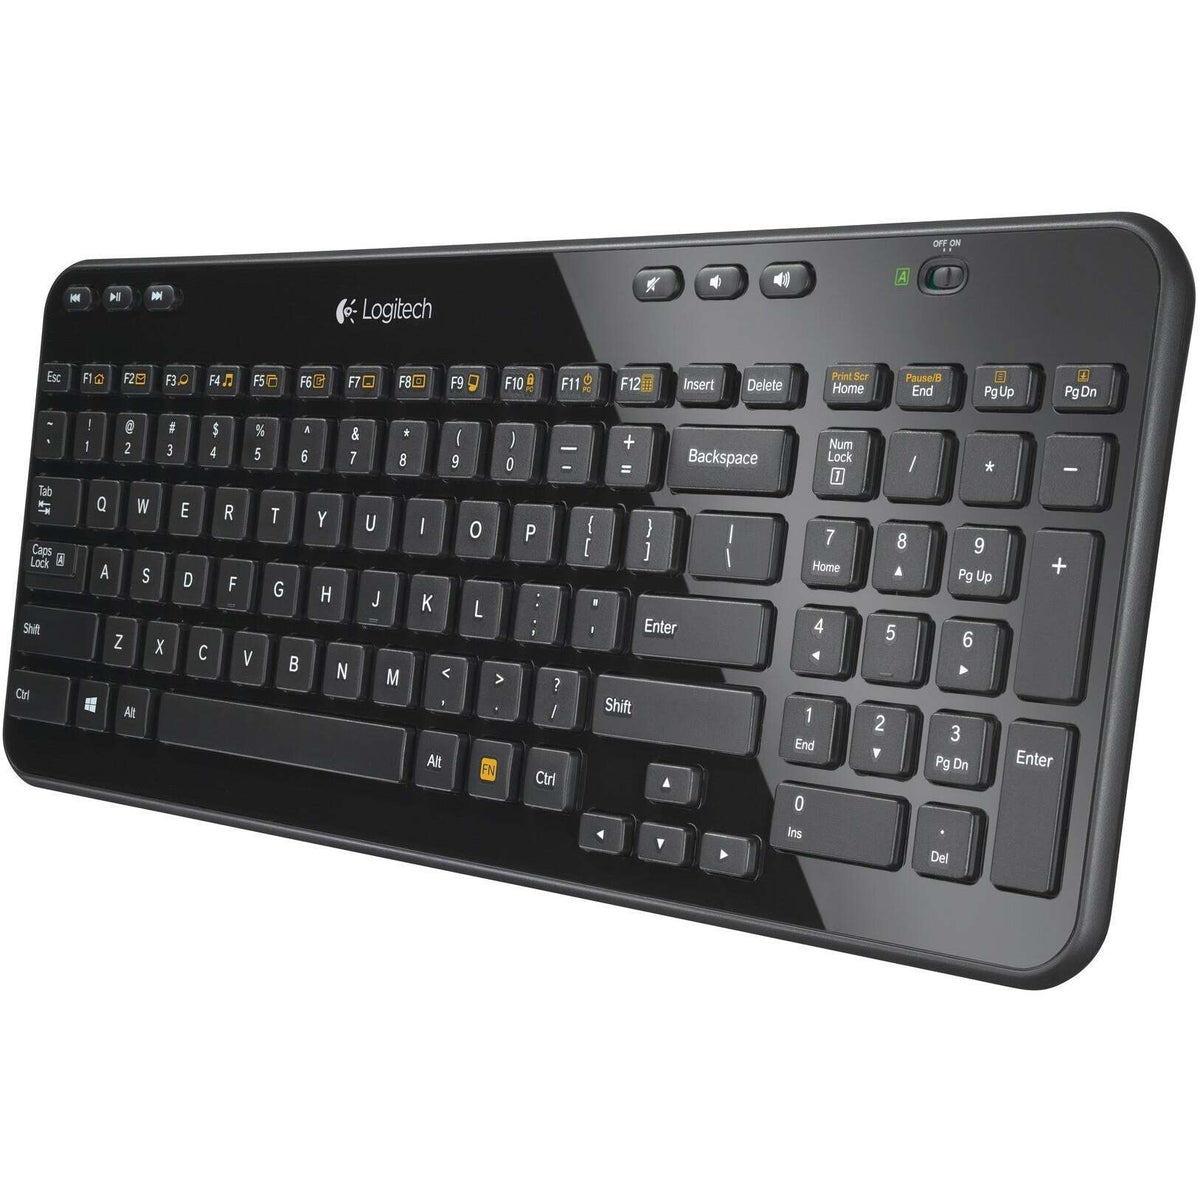 Logitech Wireless Keyboard K360